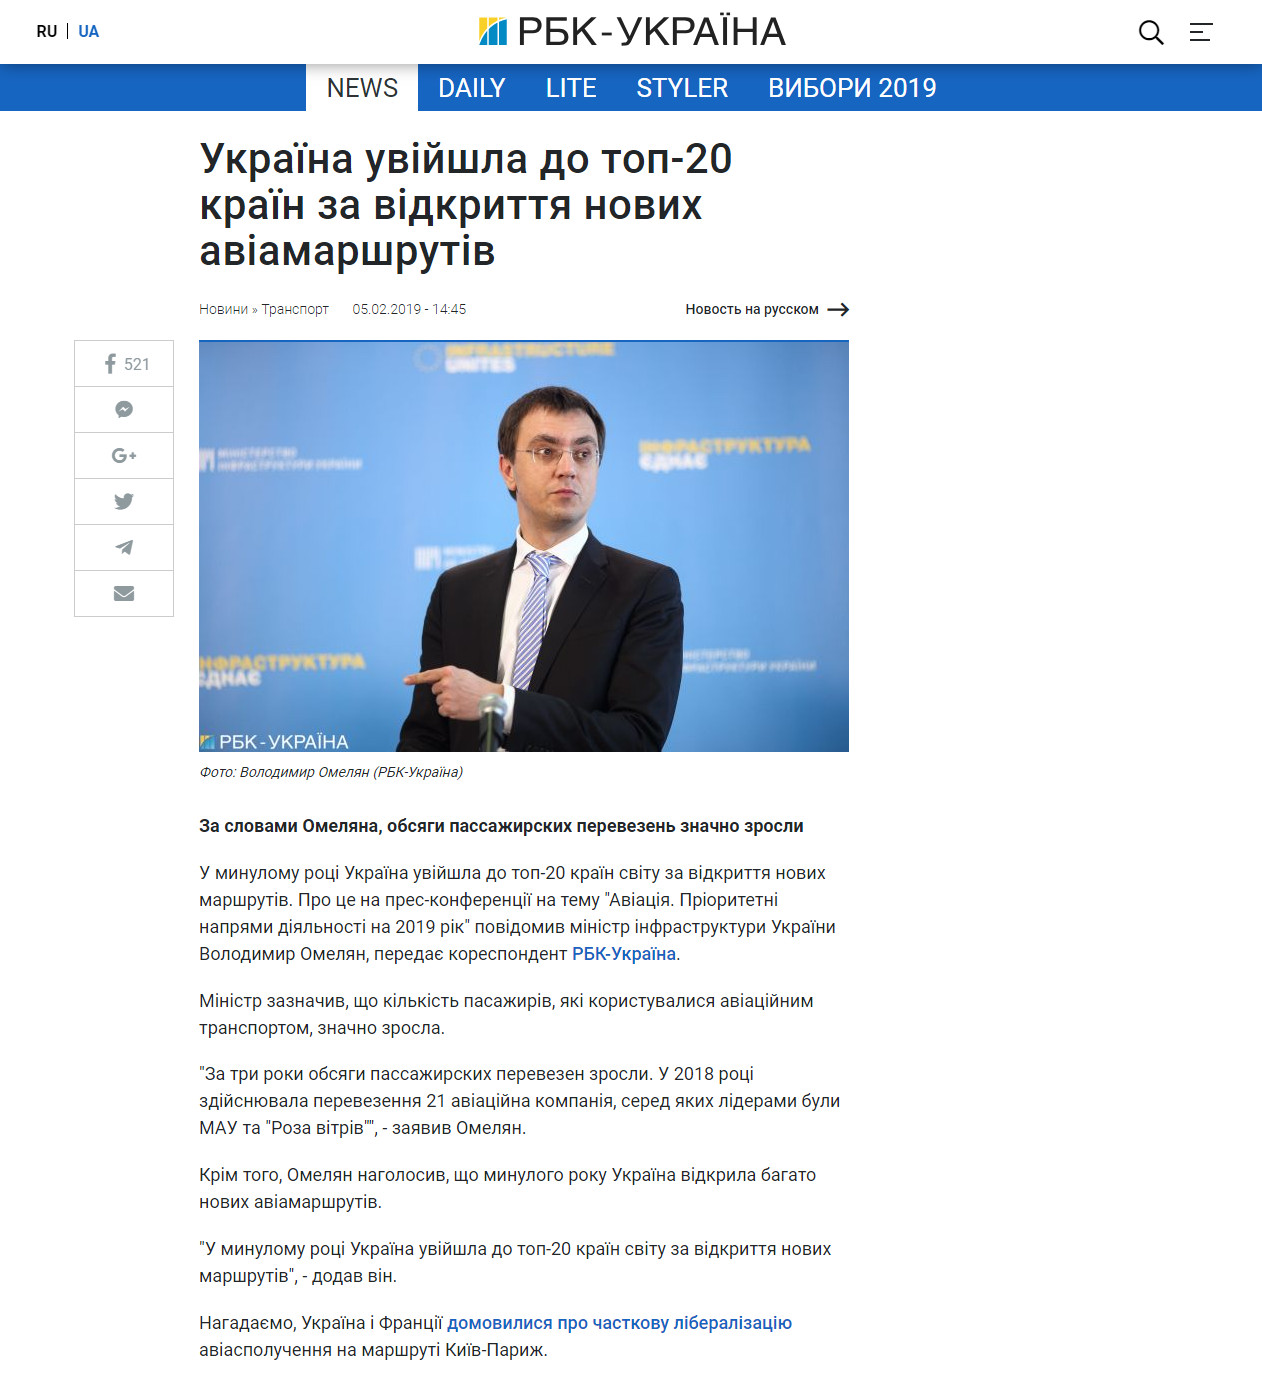 https://www.rbc.ua/ukr/news/ukraina-voshla-top-20-stran-otkrytie-novyh-1549370786.html